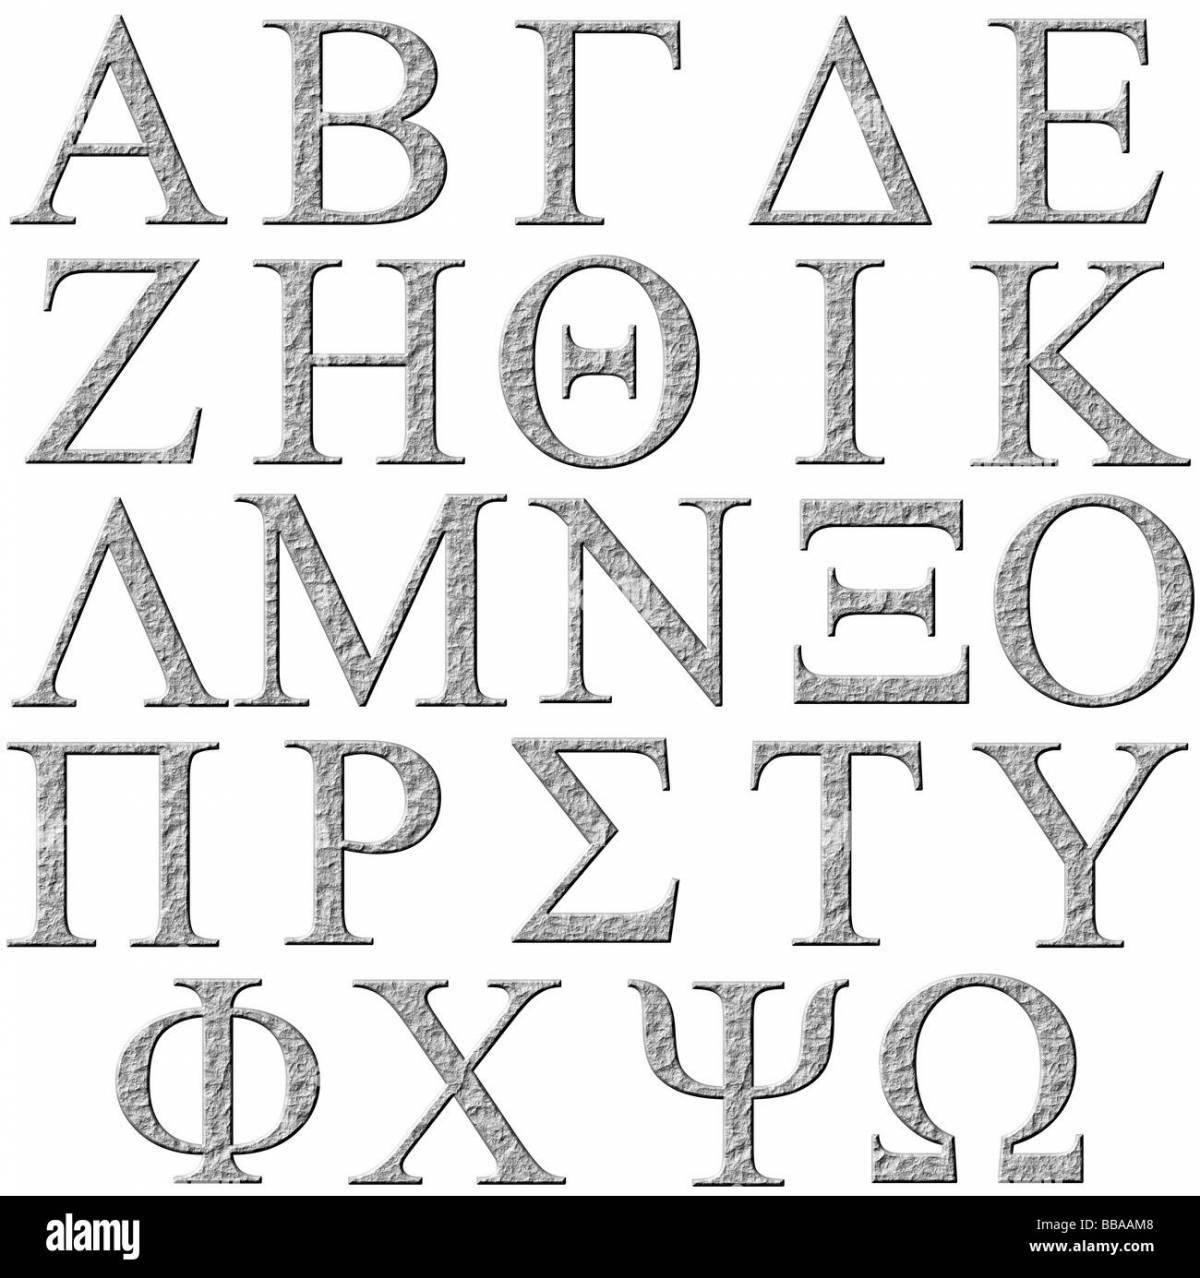 Цветная раскраска греческого алфавита